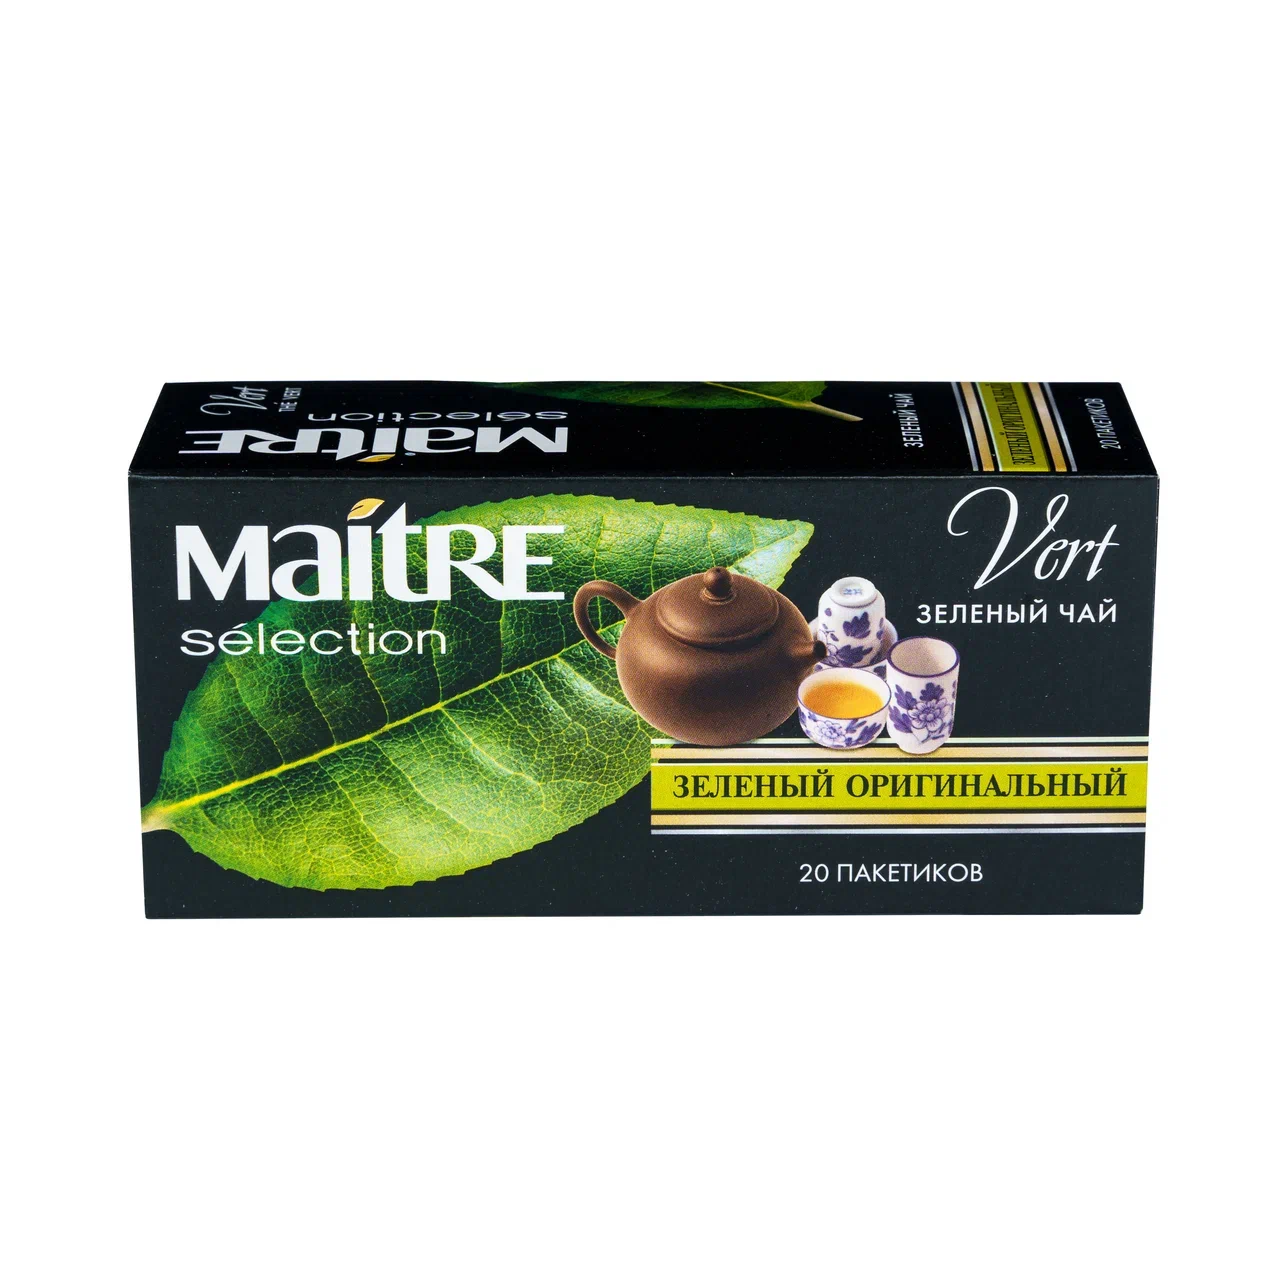 Чай Maitre selection оригинальный зеленый байховый китайский мелкий 20 пакетиков*1,8г